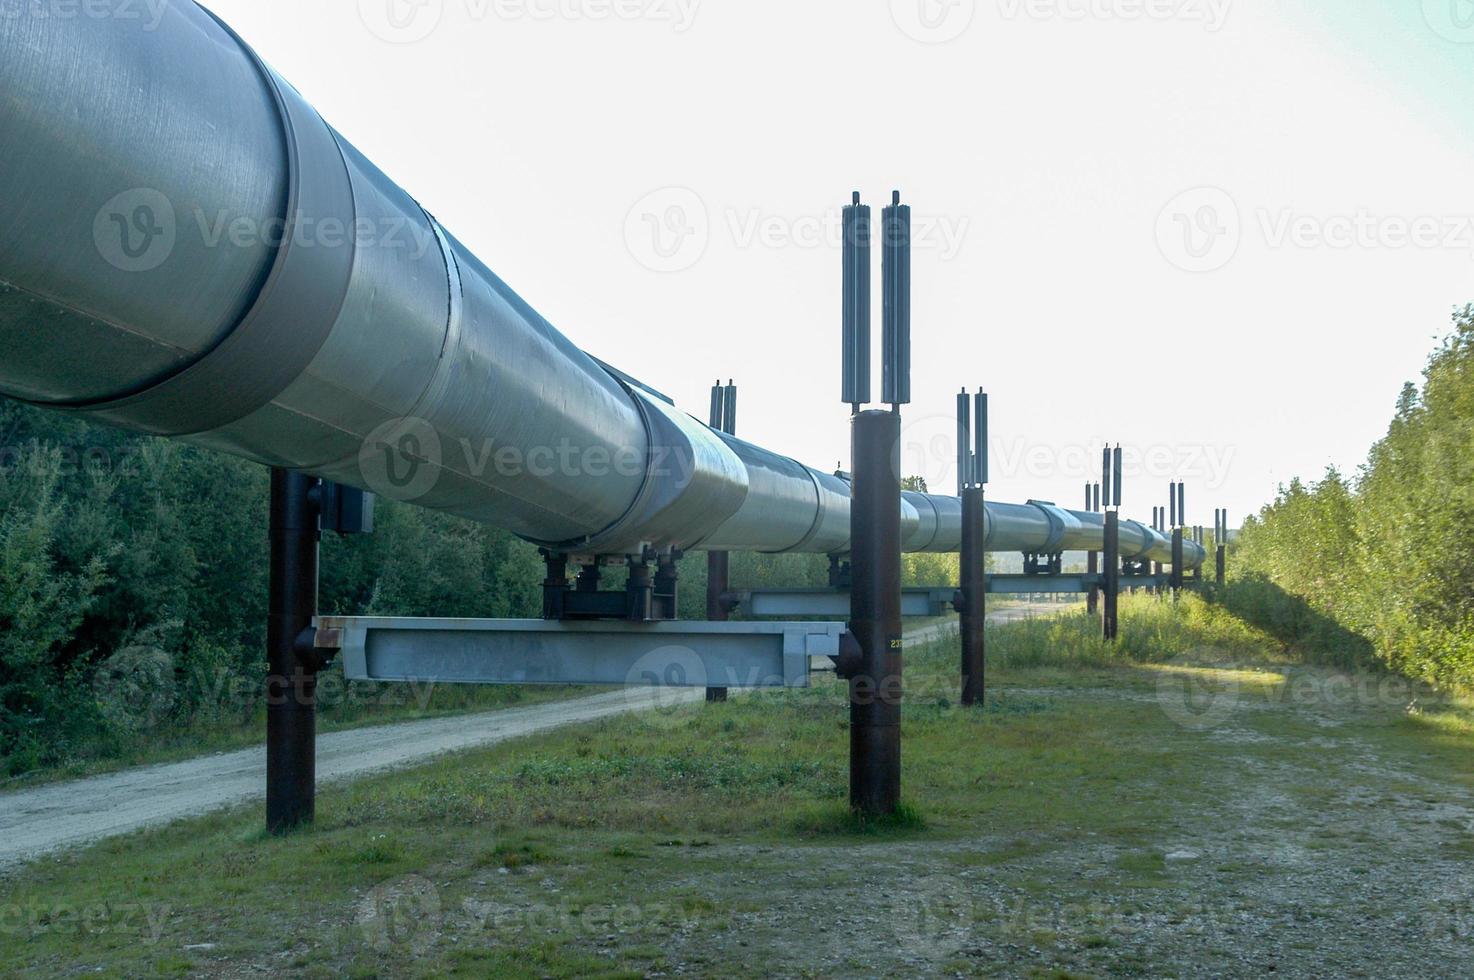 The Trans-Alaska oil pipeline in Alaska photo